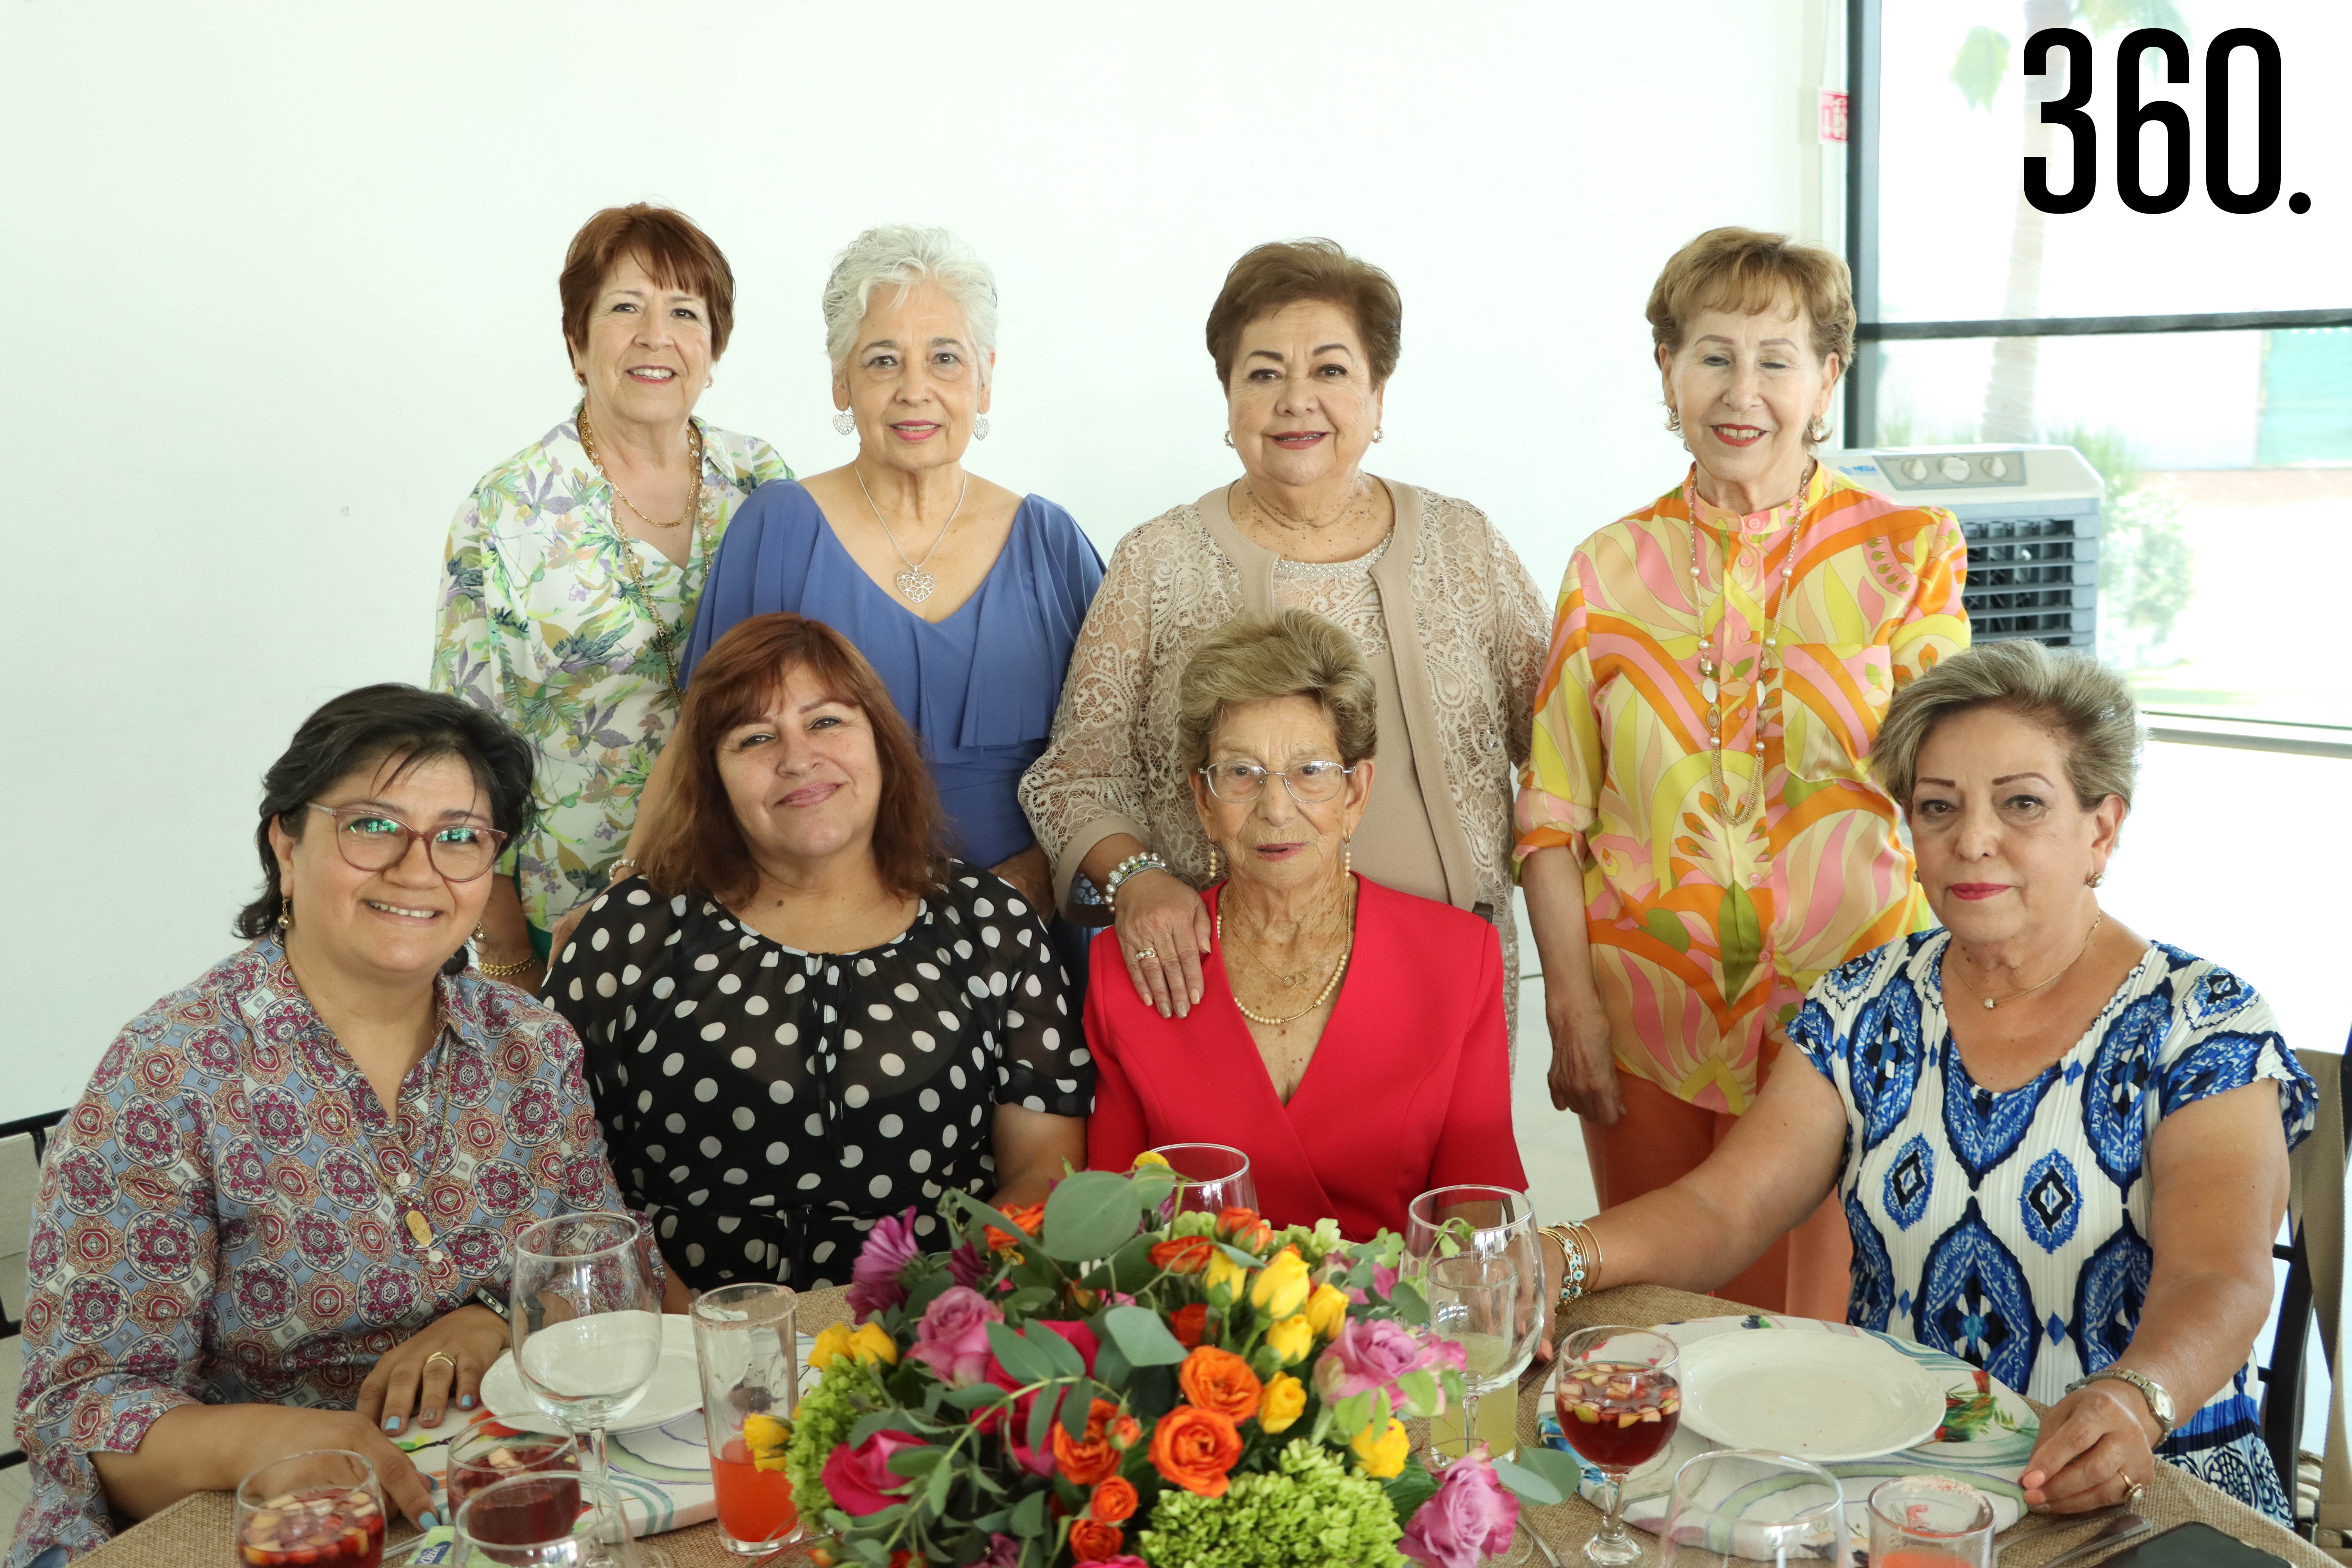 Hilda con Rosa Macarena Chávez, Nena Cordero, Juanita de la Peña, Alicia Cabrera, Rosy Guajardo y Lupita Valdés.